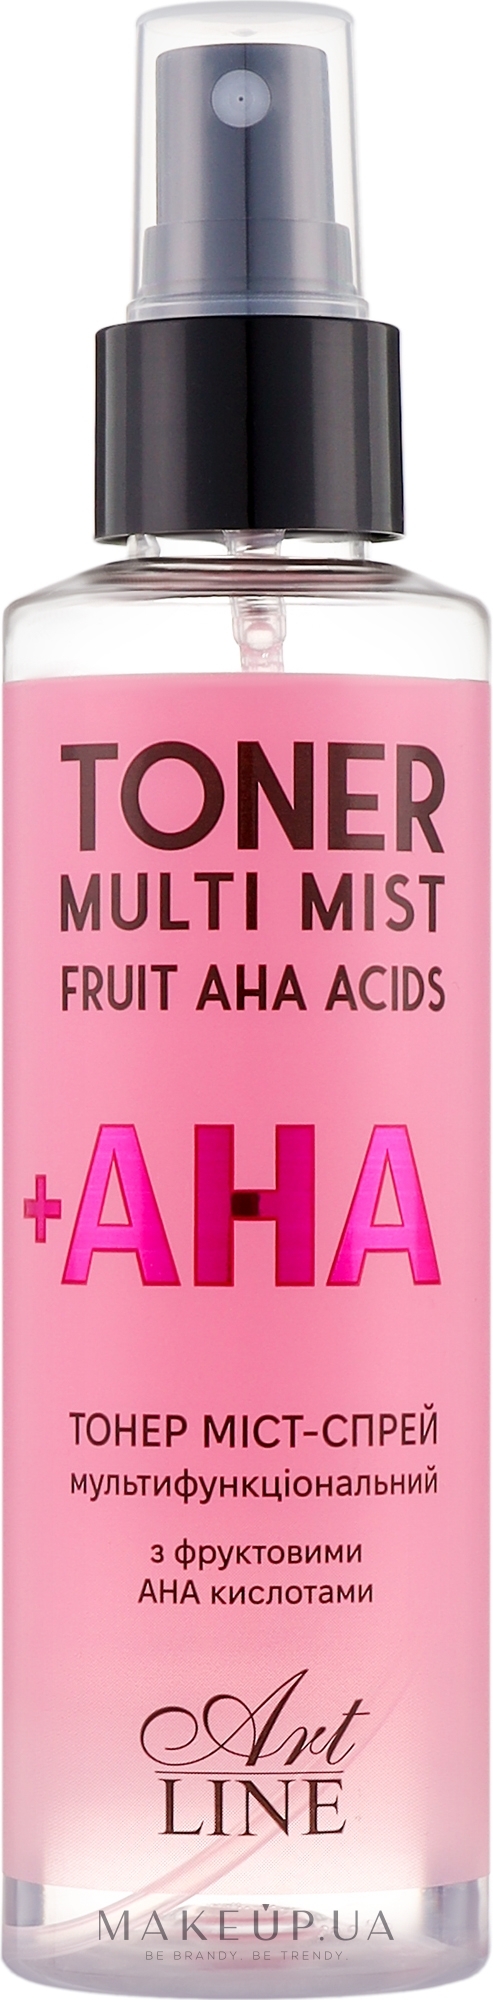 Тонер міст-спрей для обличчя з фруктовими АНА кислотами - Art Line Toner Multi Mist Fruit AHA Acids — фото 150ml